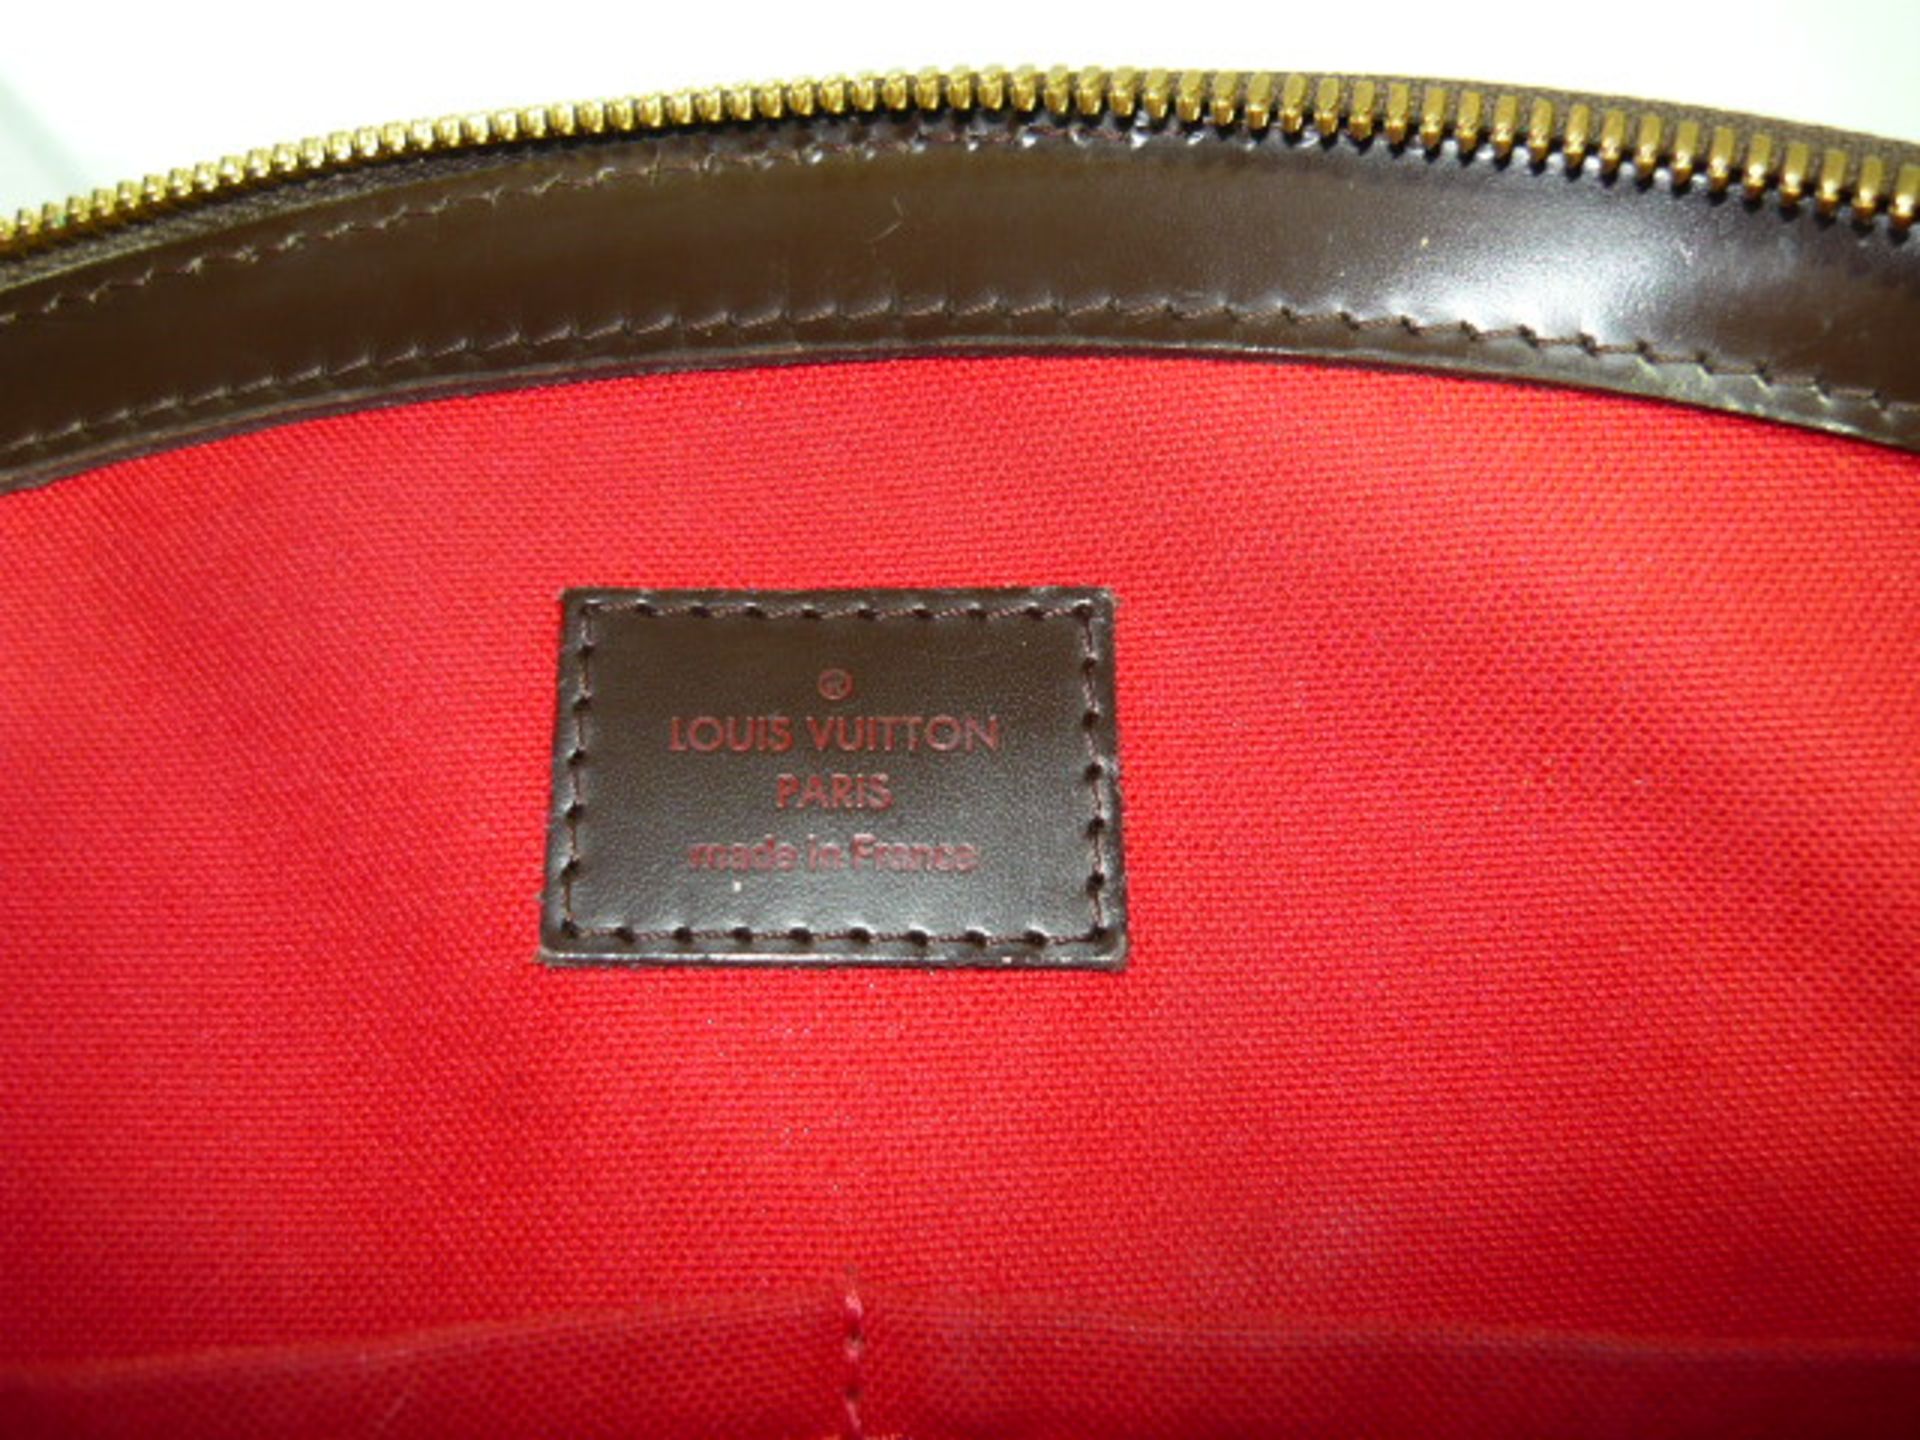 LOUIS VUITTON. Handtasche Verona Damier Ebene MM. Gebraucht, berieben aber in gutem Zustand. RV - Image 7 of 7